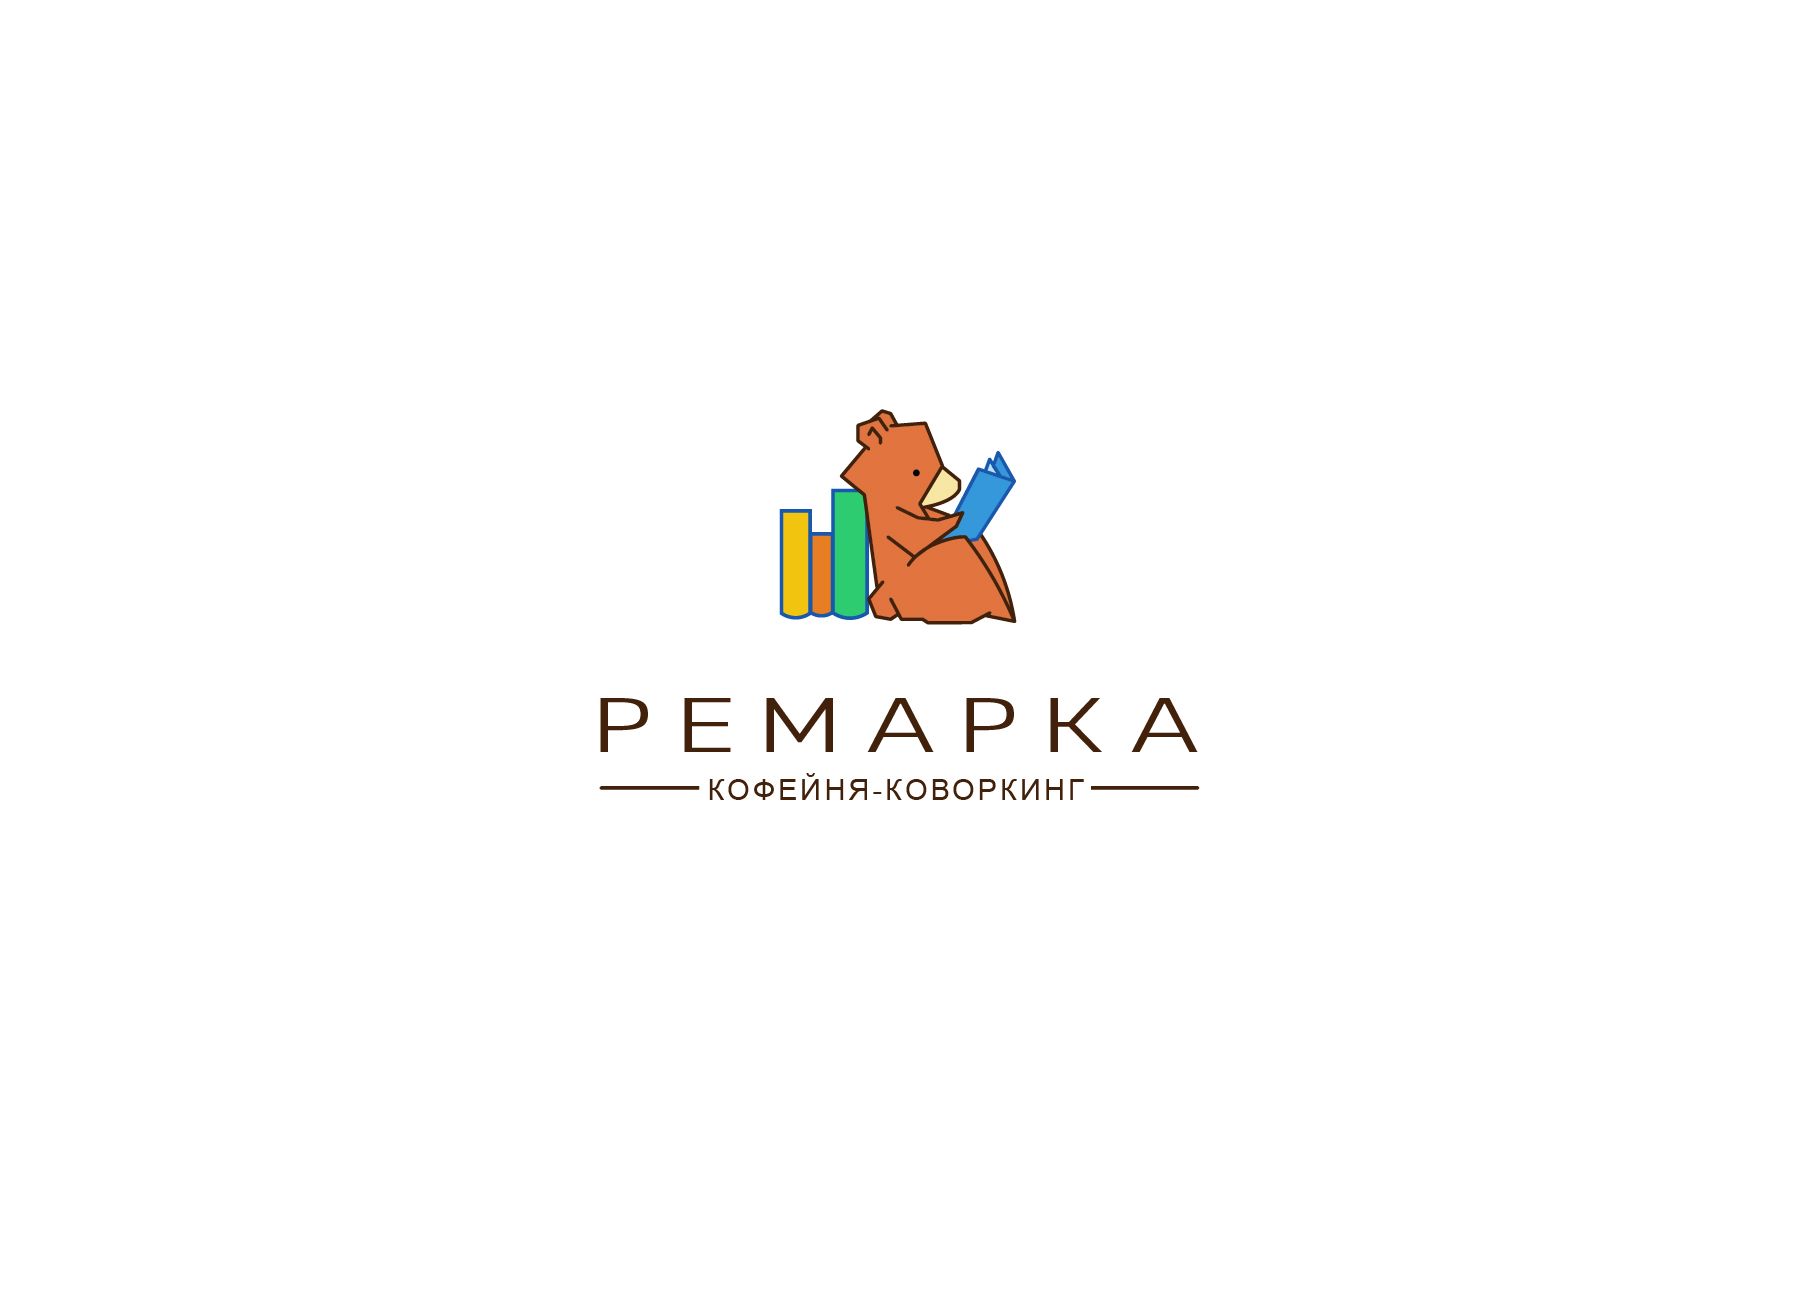 Лого и фирменный стиль для Ремарка кофейня-коворкинг - дизайнер Toxyo11